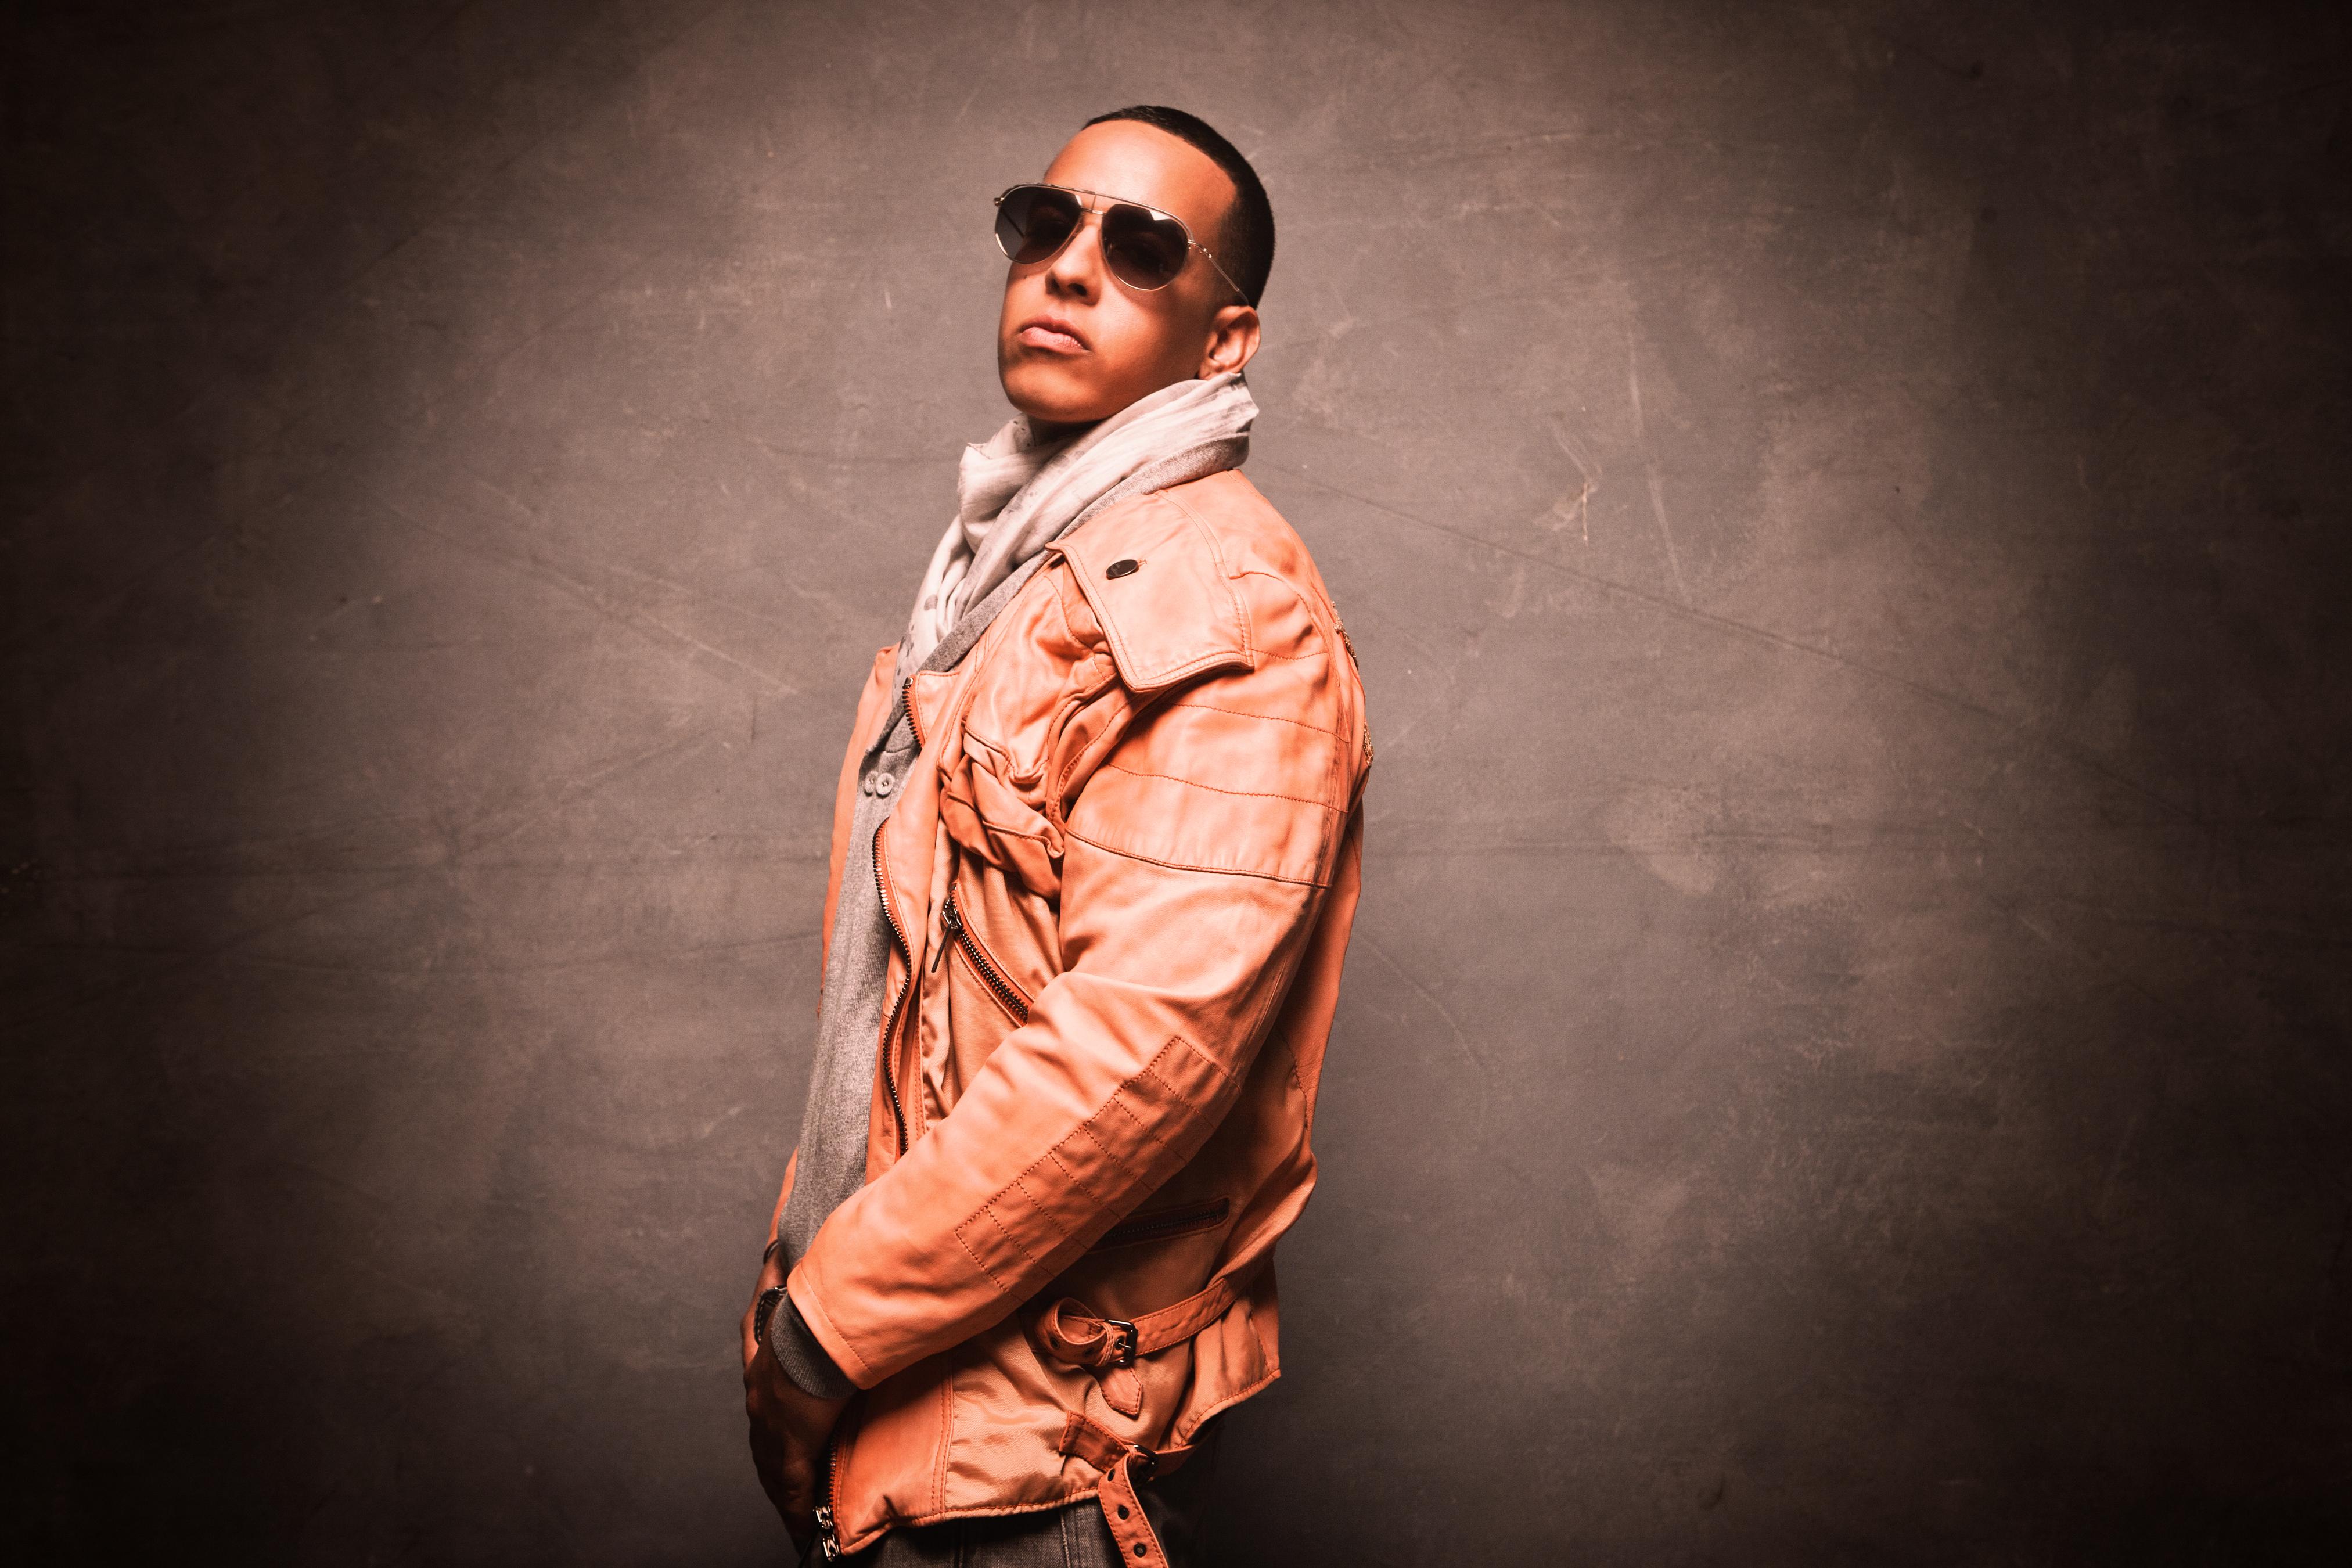 Daddy Yankee estrena “Palabras con sentido” su nuevo videoclip